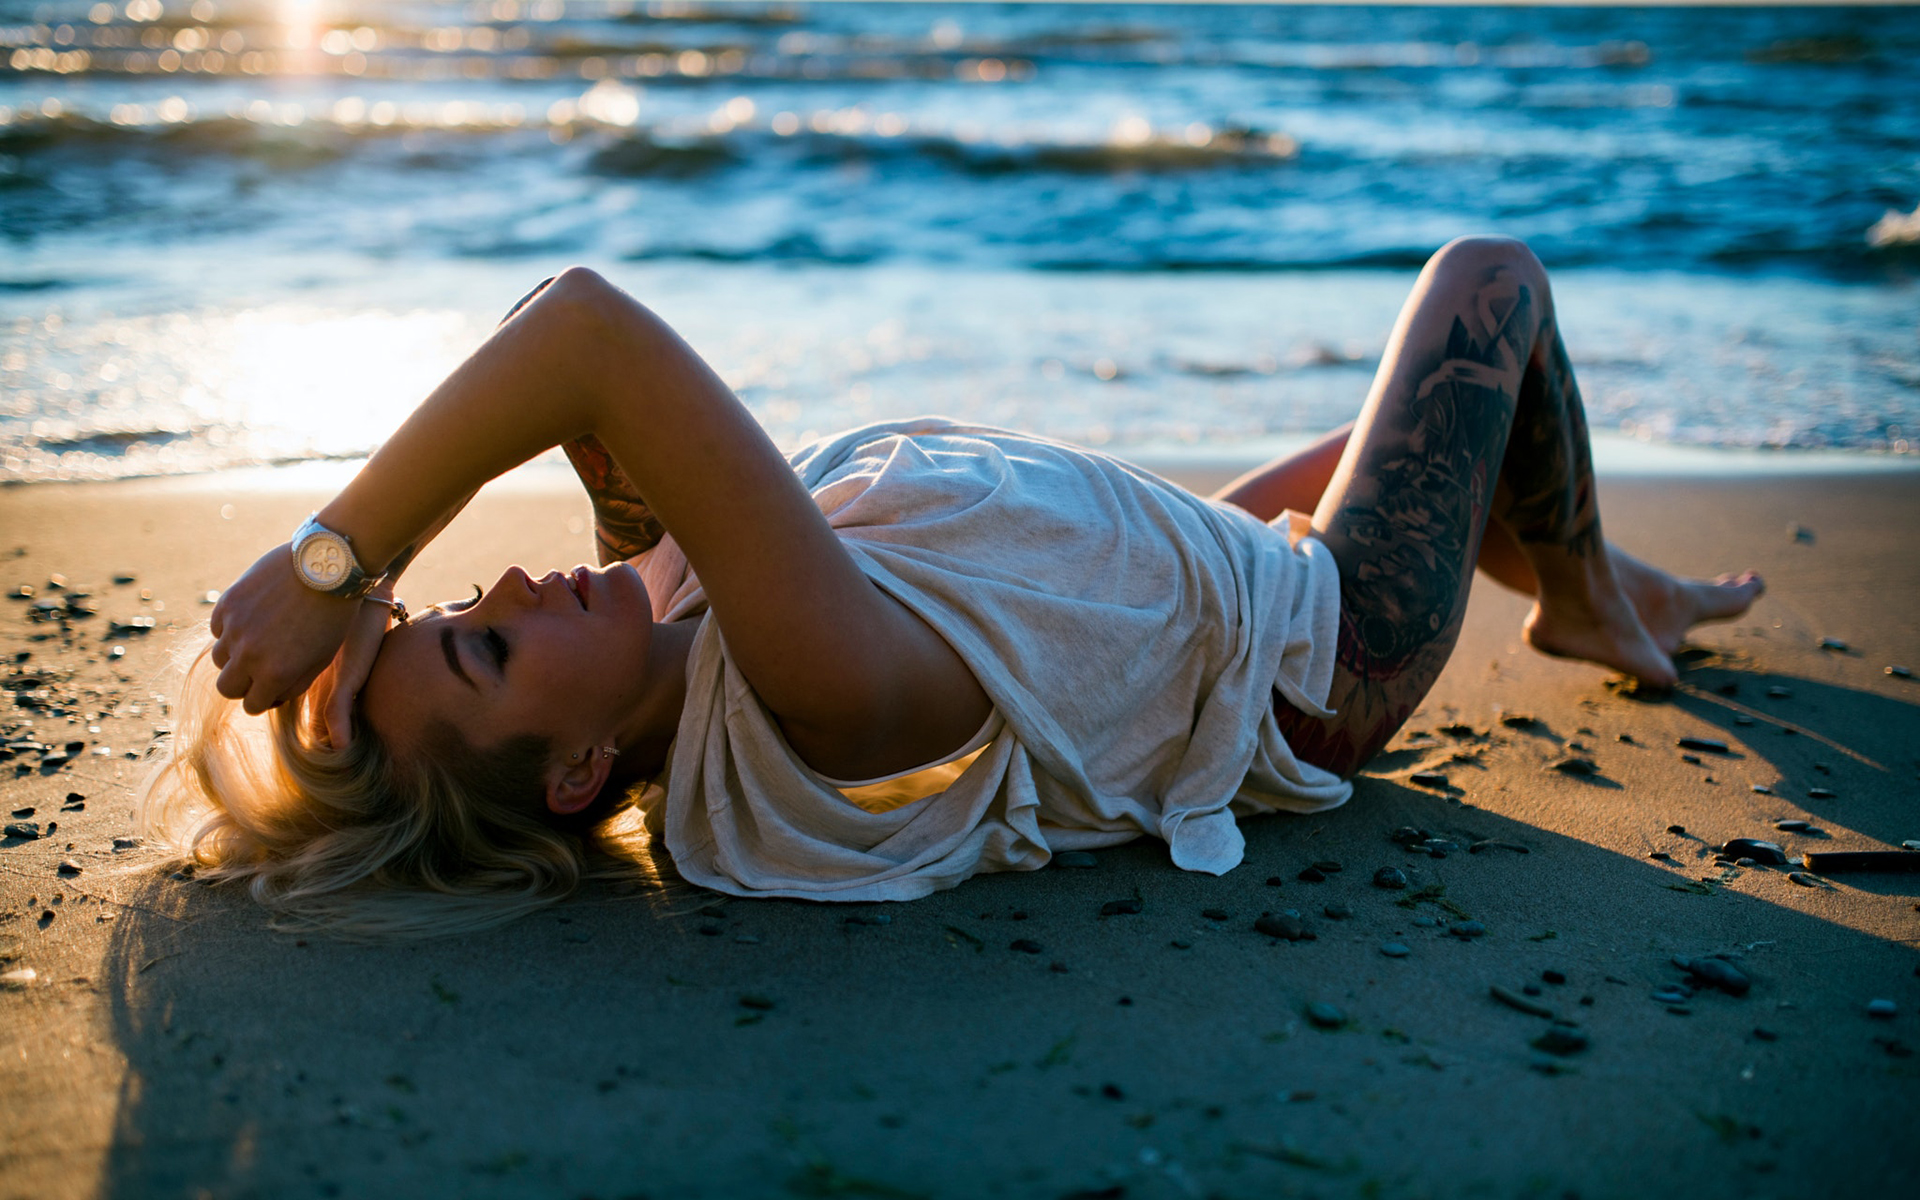 Miami music deep house. Блондинка на песке. Девушка в платье красивая поза на песке. Дип Хаус. Девушка в платье рубашке на пляже.